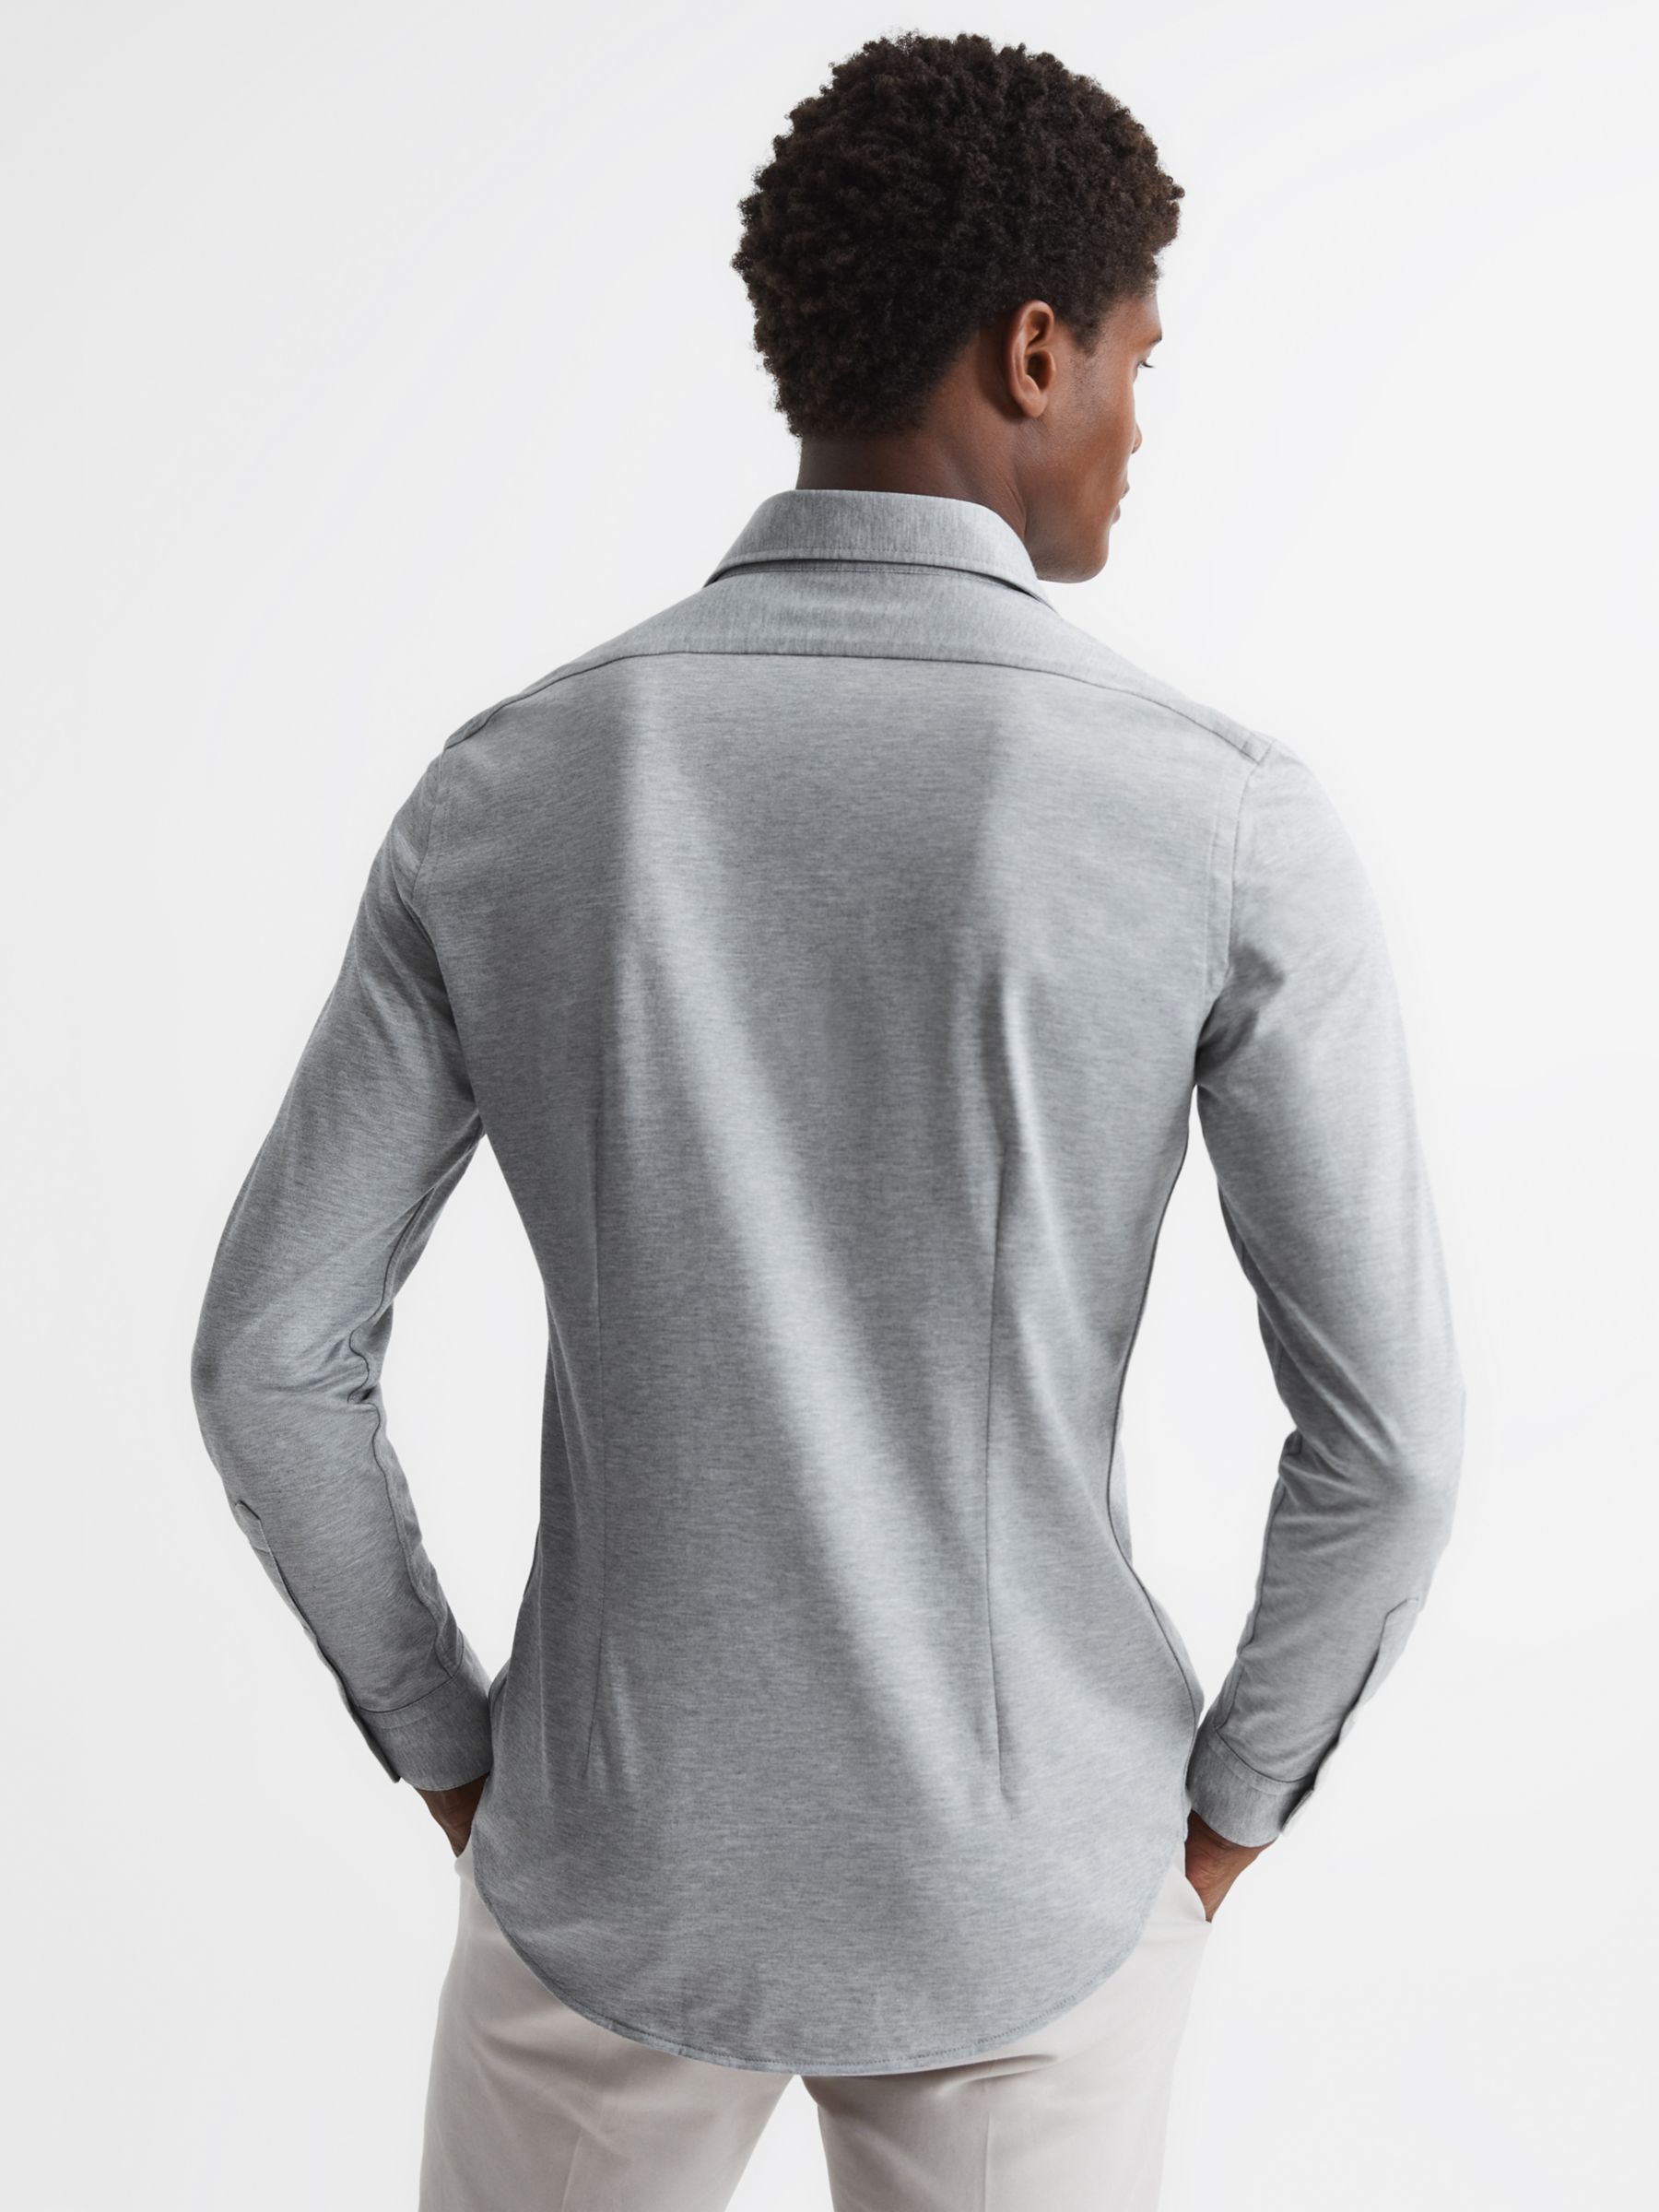 Reiss Nate Cutaway Collar Slim Fit Jersey Shirt, Grey Melange, XS